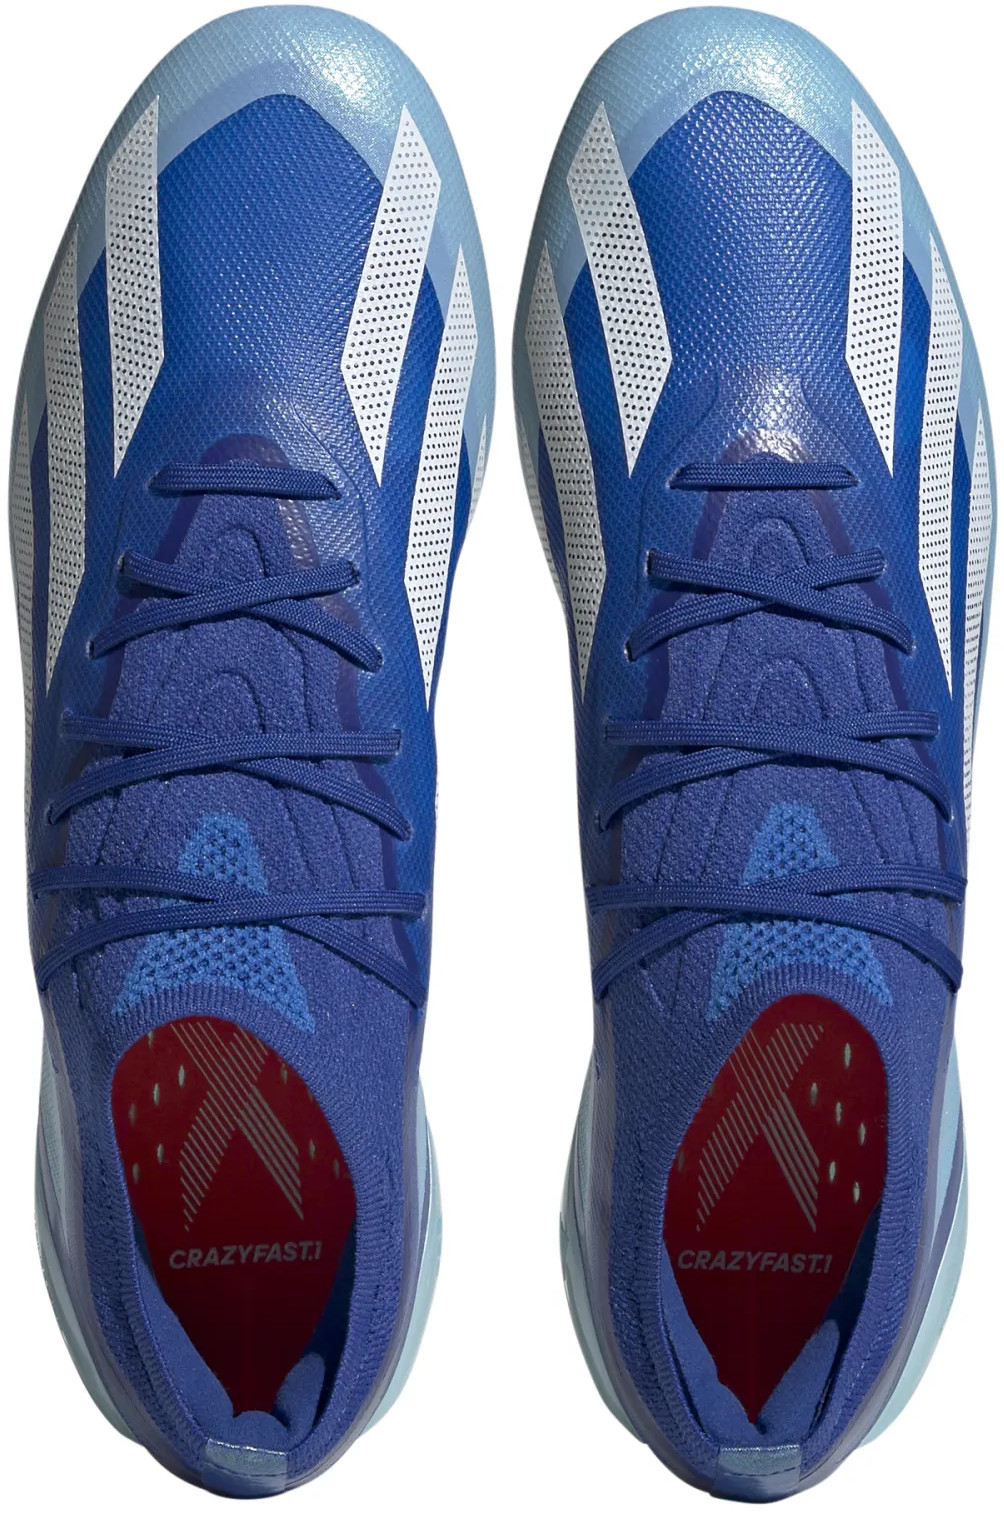 Football shoes adidas X CRAZYFAST.1 SG - Top4Football.com